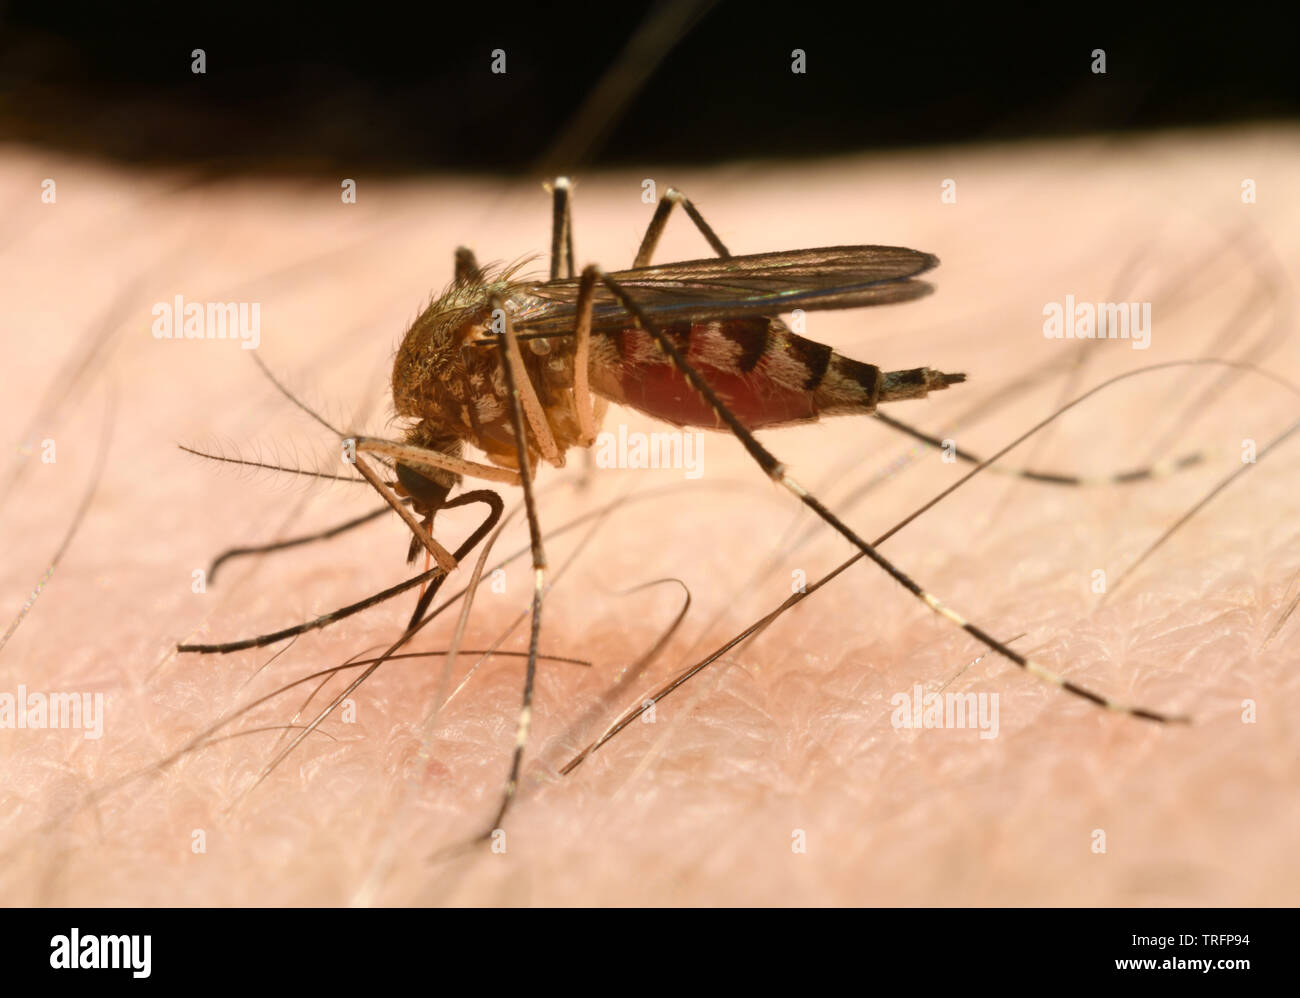 Cerca de una hembra de Mosquito Culex pipiens abdomen engorging con una comida de sangre por punción con la aguja de la piel humana como la probóscide Foto de stock